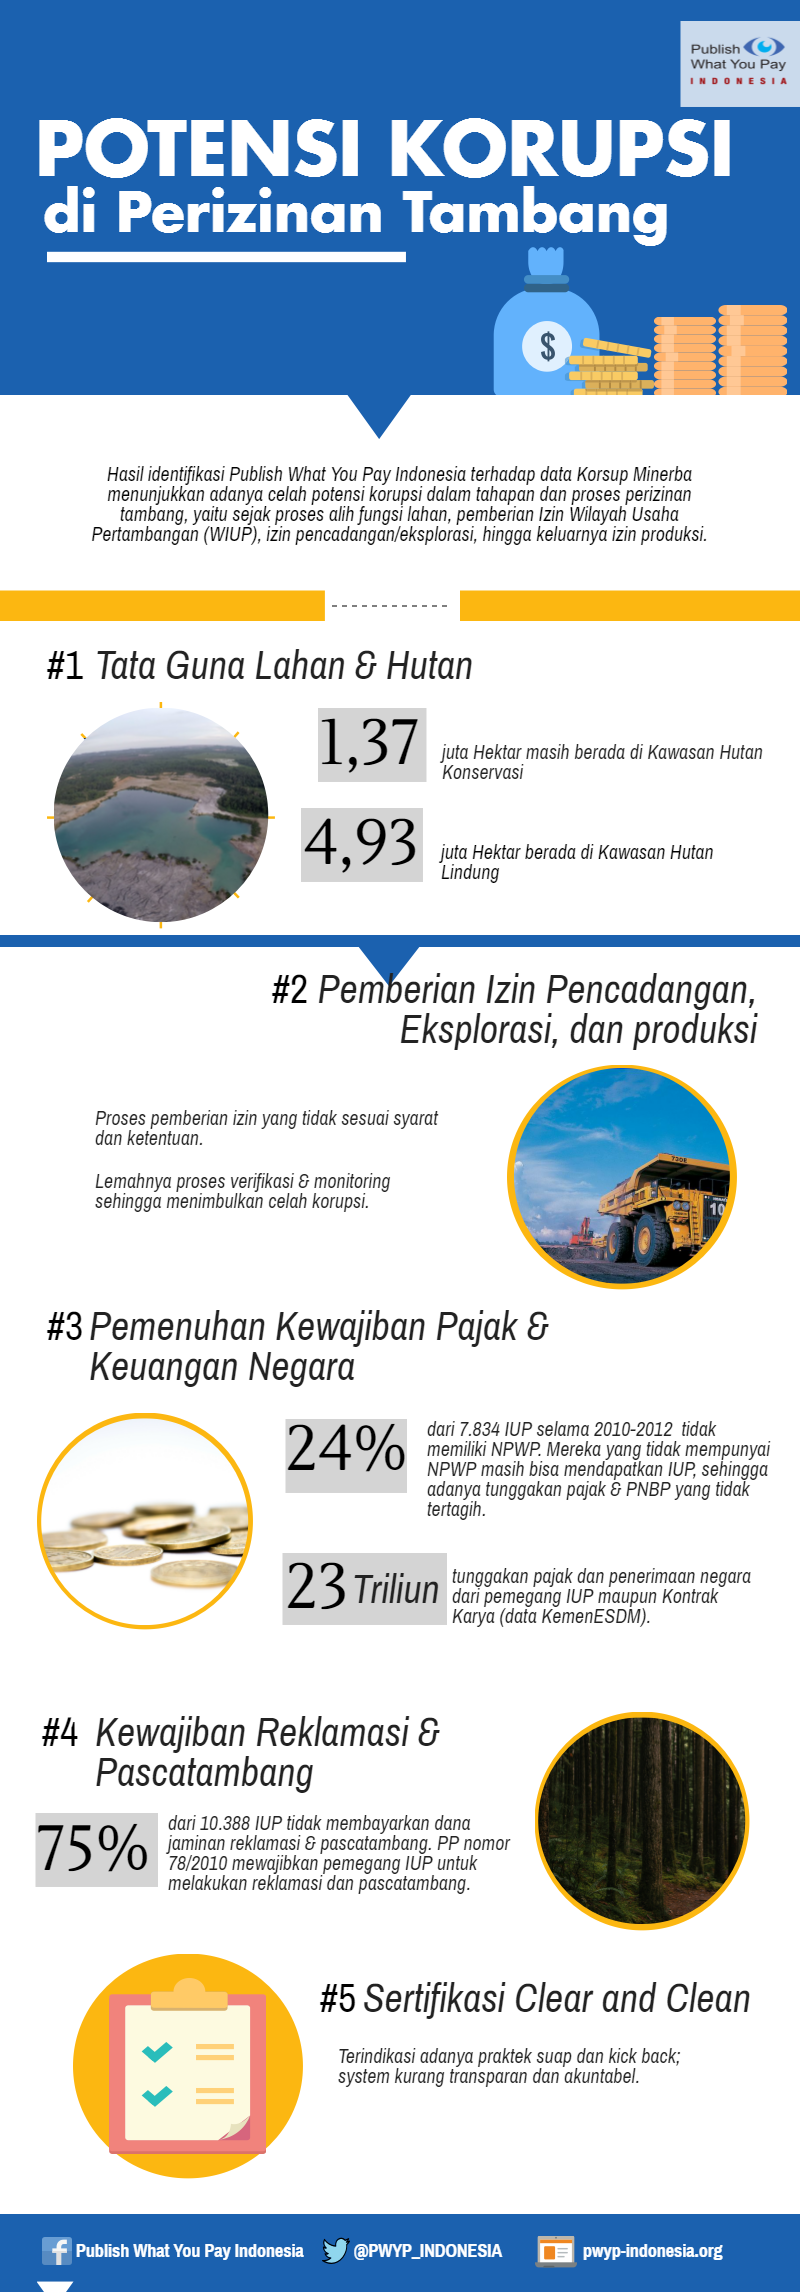 Infografis_Potensi Korupsi Perizinan Tambang